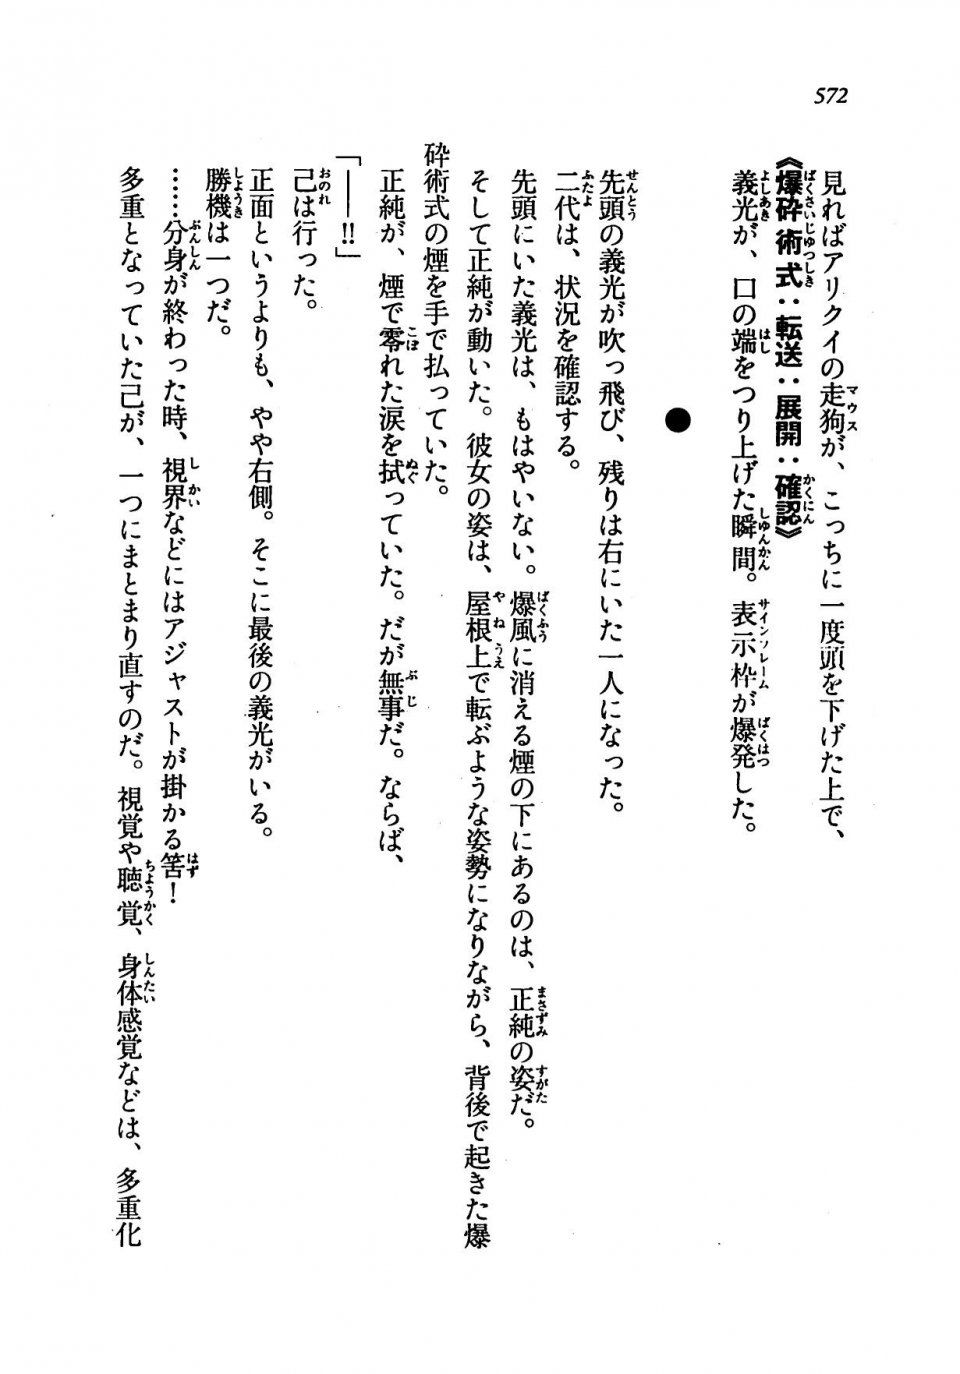 Kyoukai Senjou no Horizon LN Vol 19(8A) - Photo #572